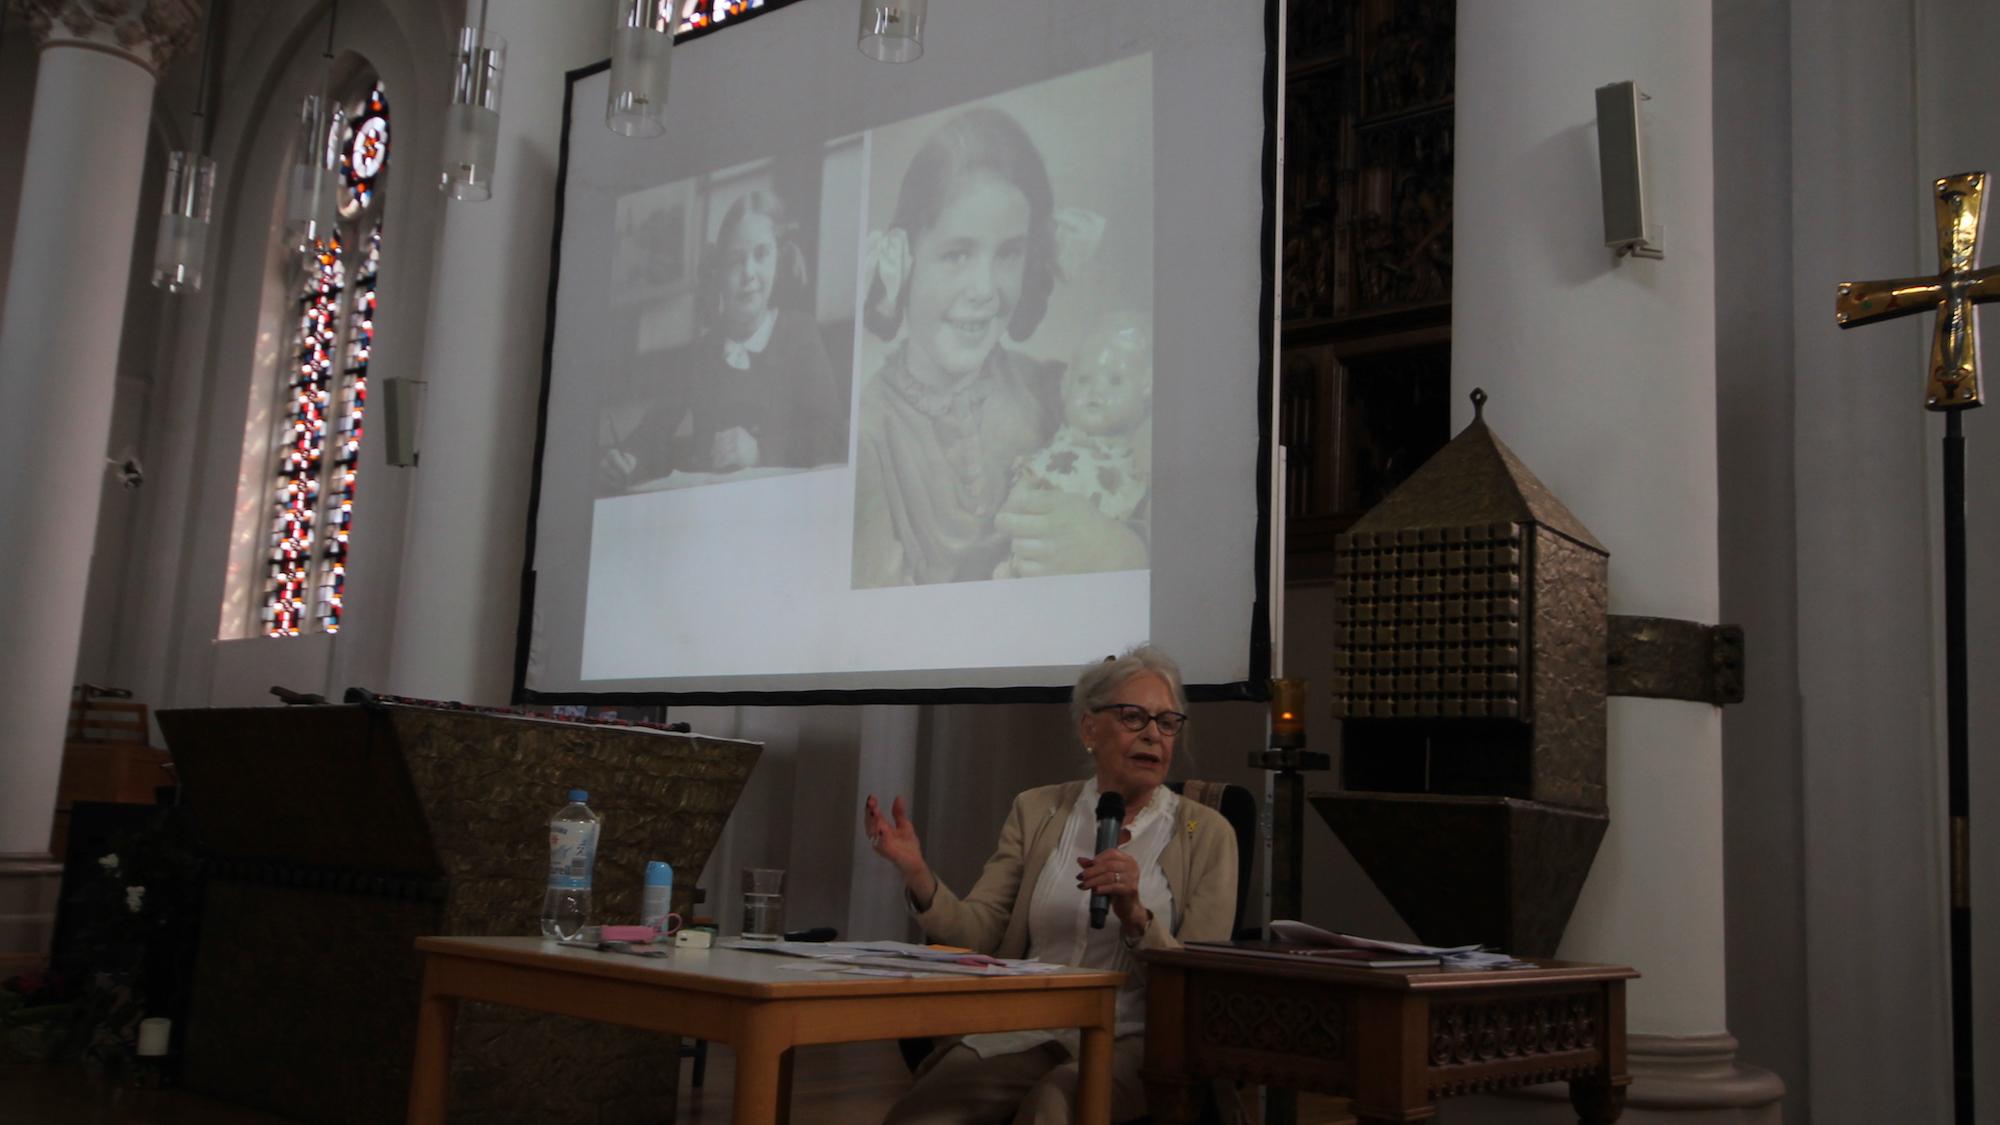 Eva Weyl ist 89 Jahre alt. Die Projektion im Hintergrund zeigt sie als Sechsjährige. (c) Kathrin Albrecht